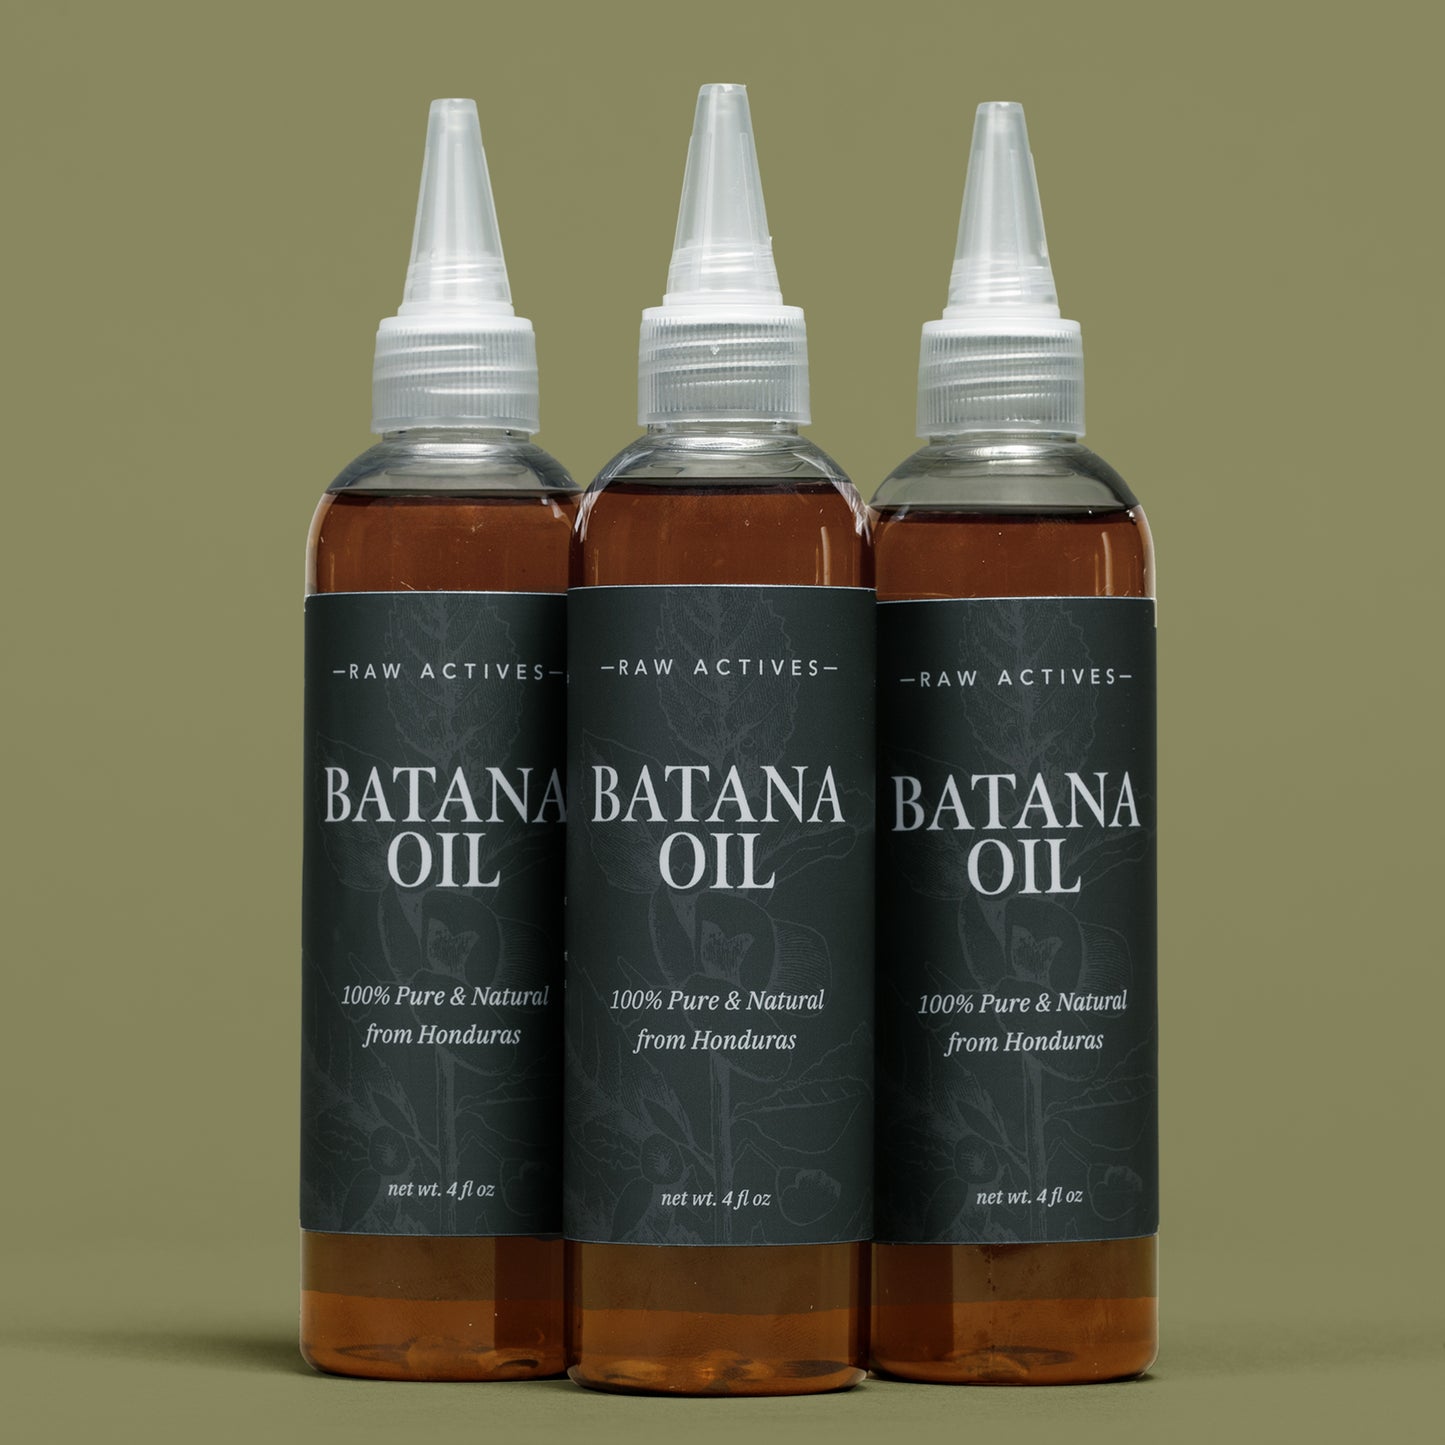 Batana Oil for Hair Growth, 100% Natural from Honduras